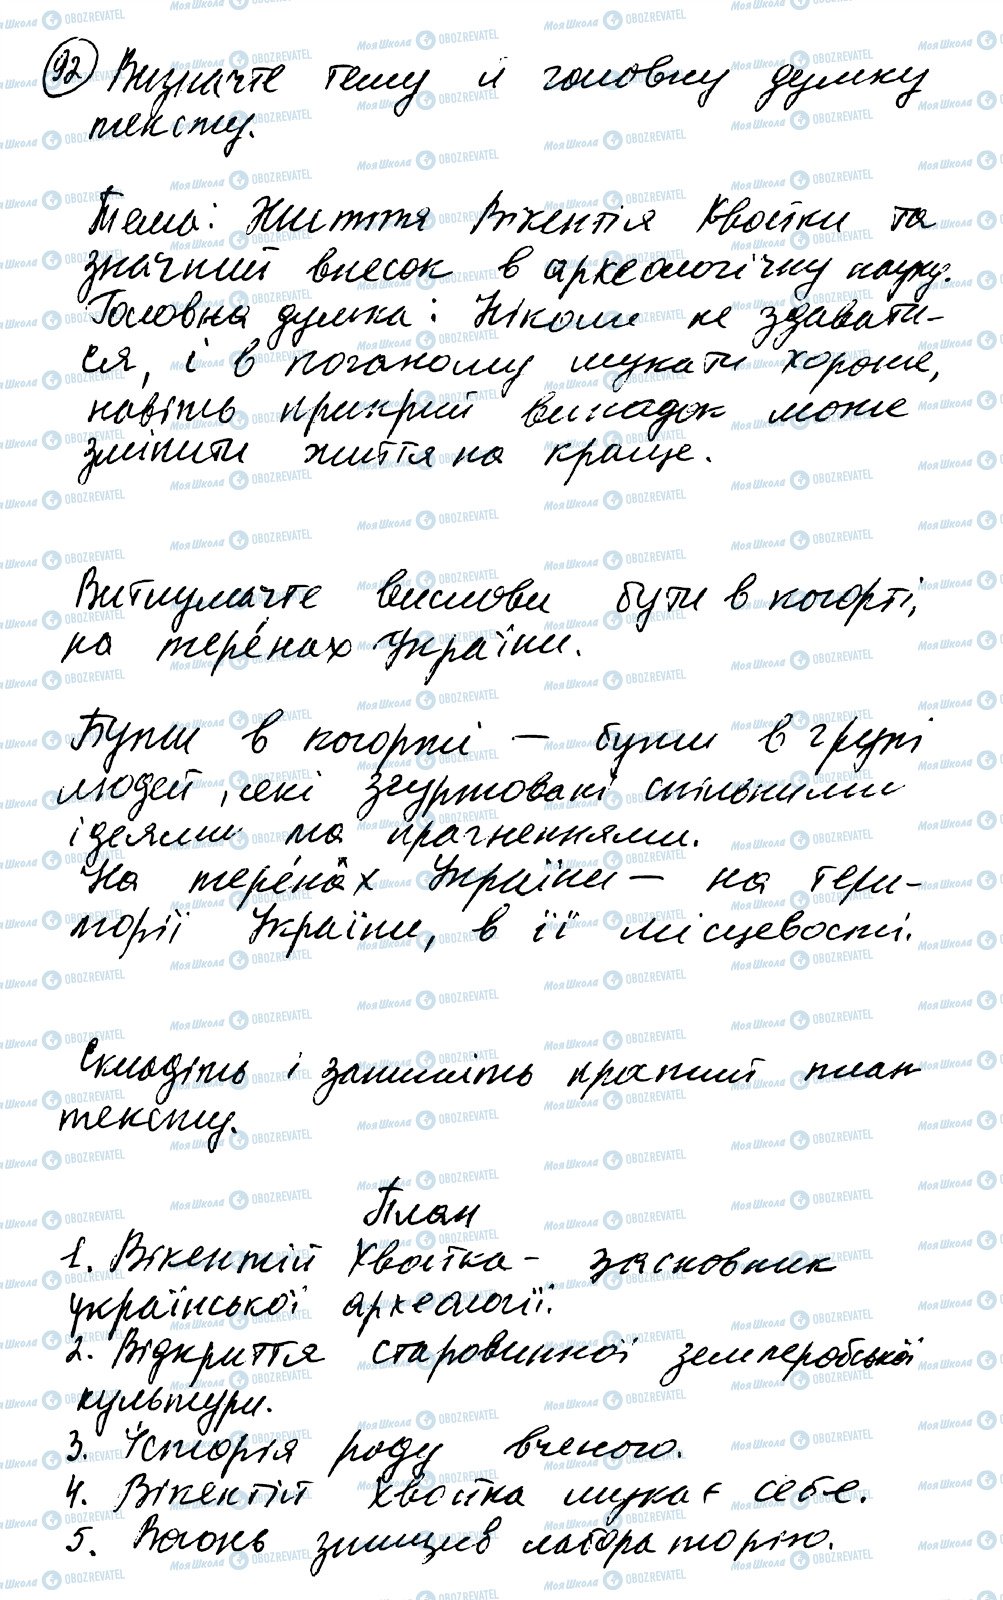 ГДЗ Українська мова 8 клас сторінка 92